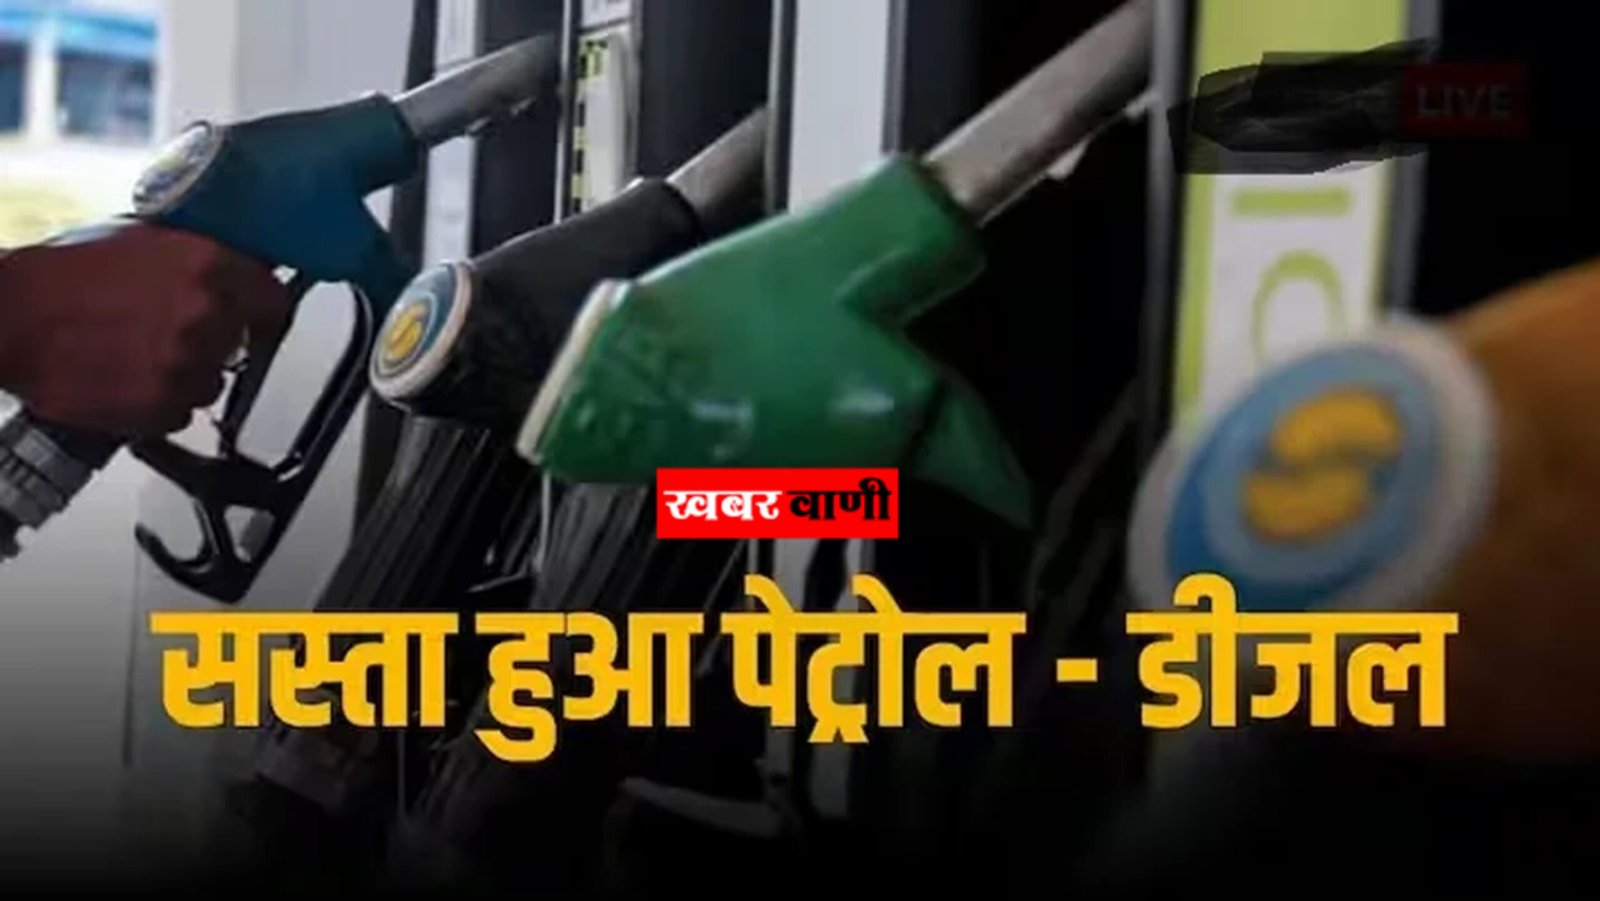 Petrol Diesel Price – सस्ते हुए पेट्रोल-डीजल के दम, 17 मार्च की रेट जारी,